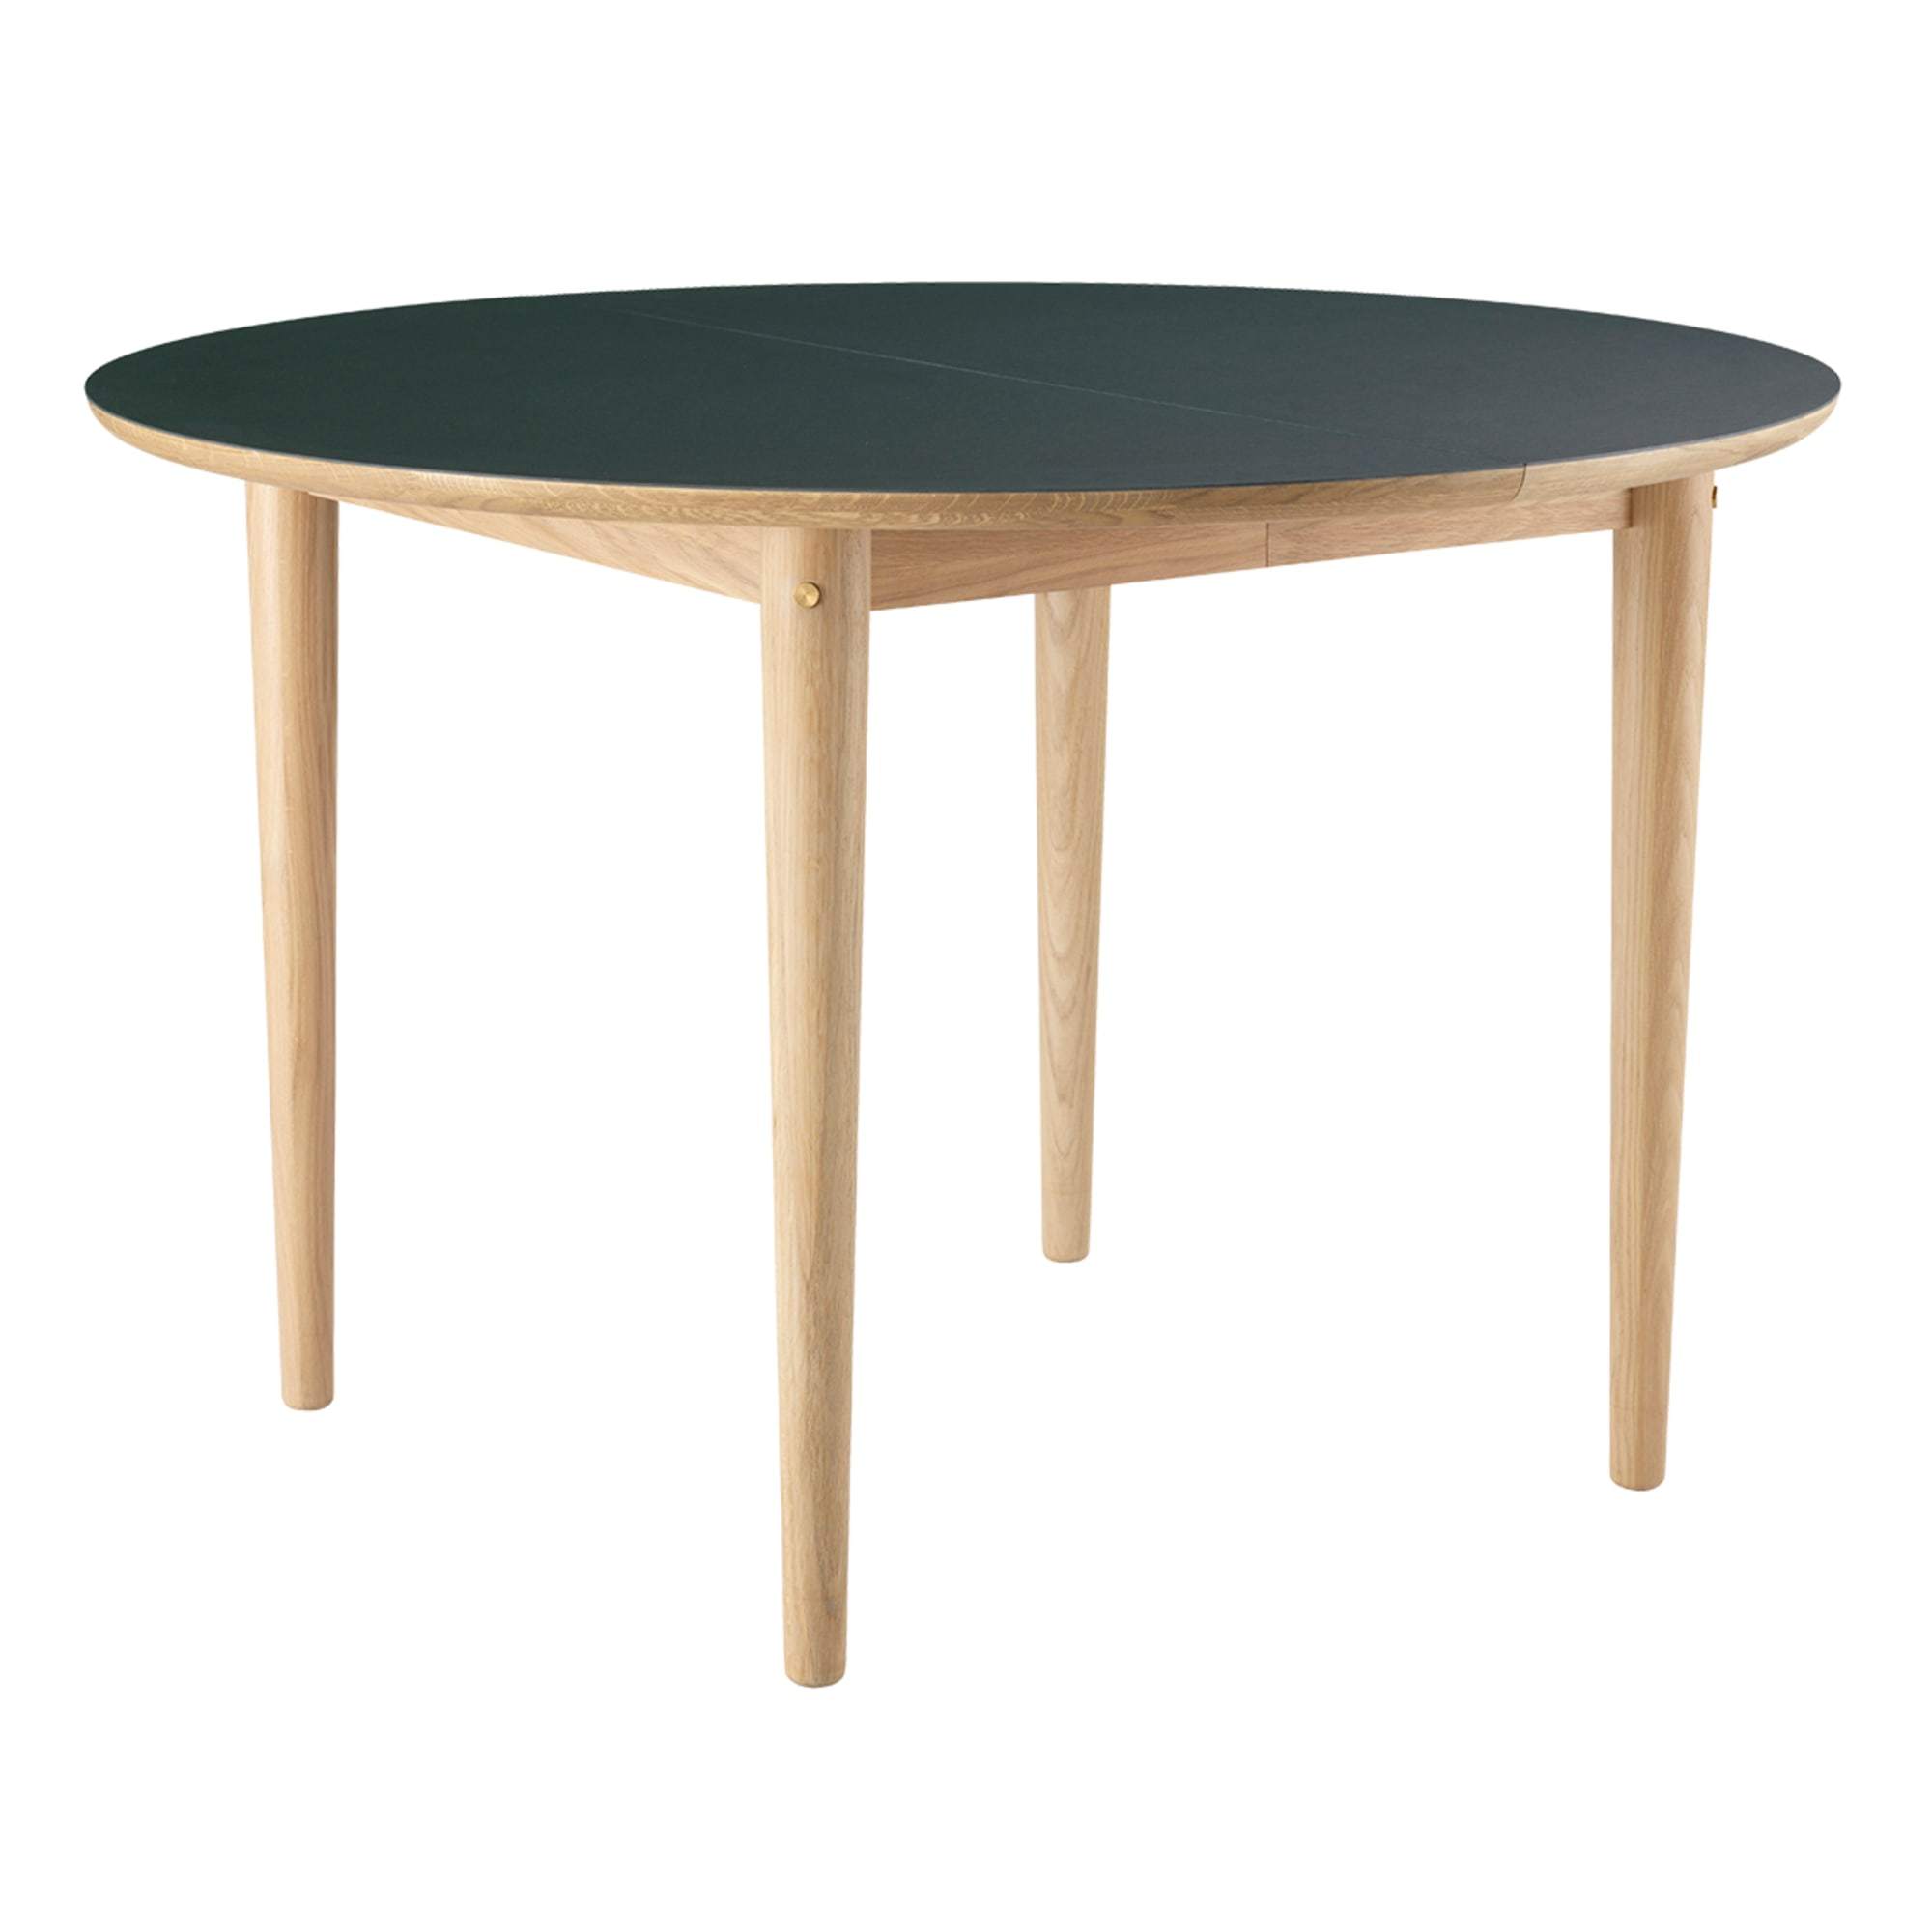 FDB Møbler C62 E Jídelní stůl s funkcí vytáhnout, přírodní/tmavě zelená linoleum